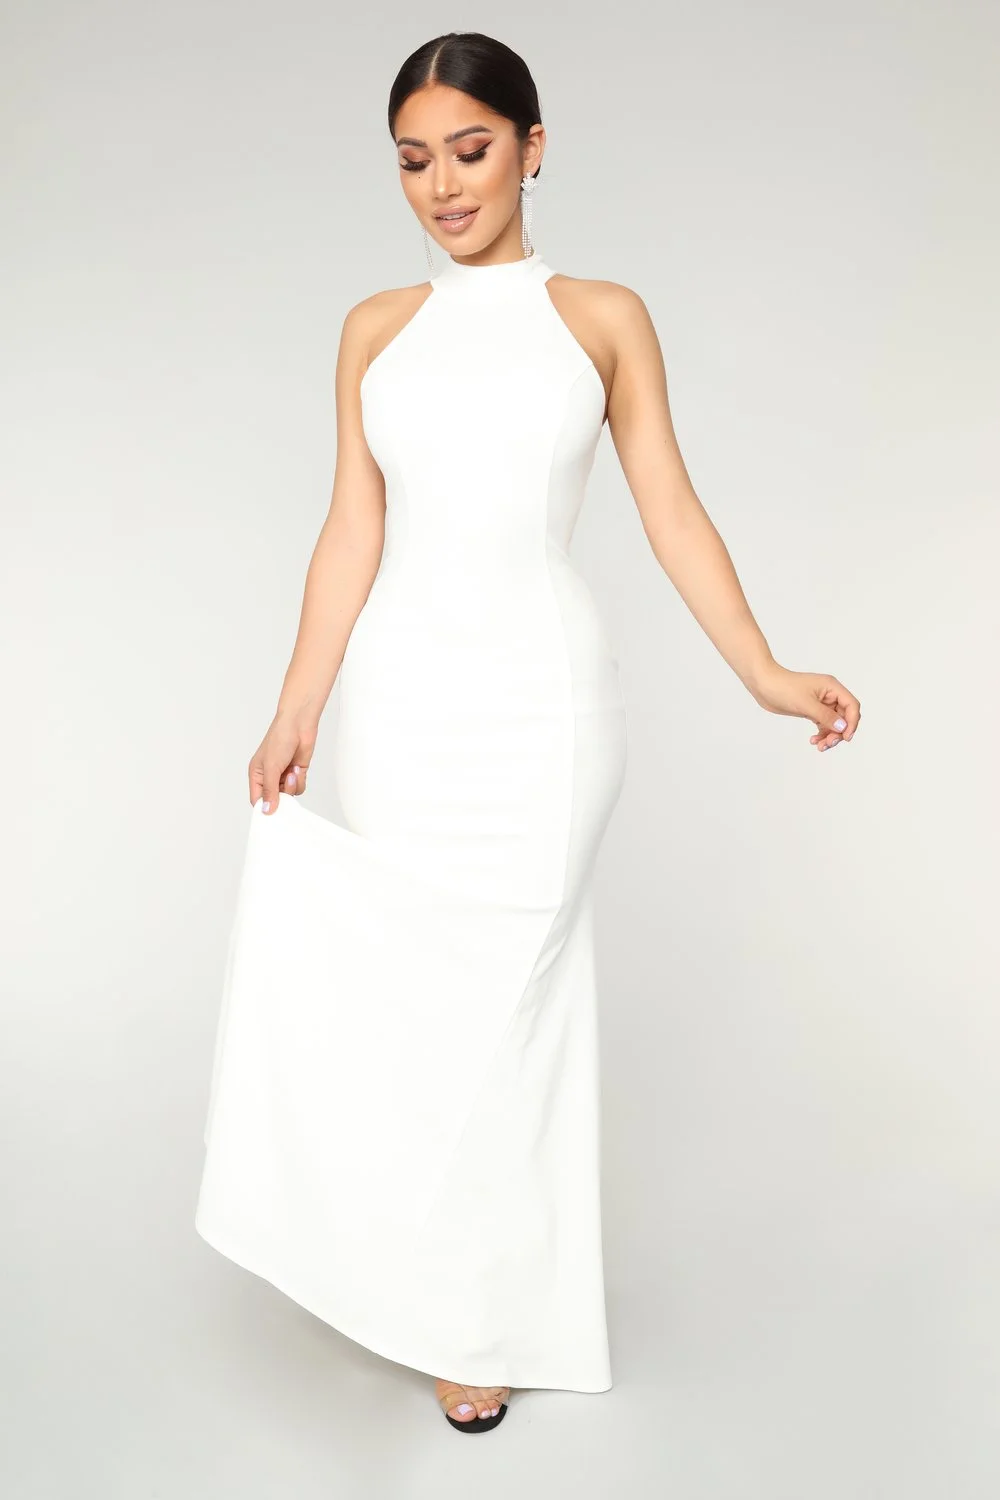 Випустили копію розкішної весільної сукні Меган Маркл, і її ціна просто смішна - фото 411529